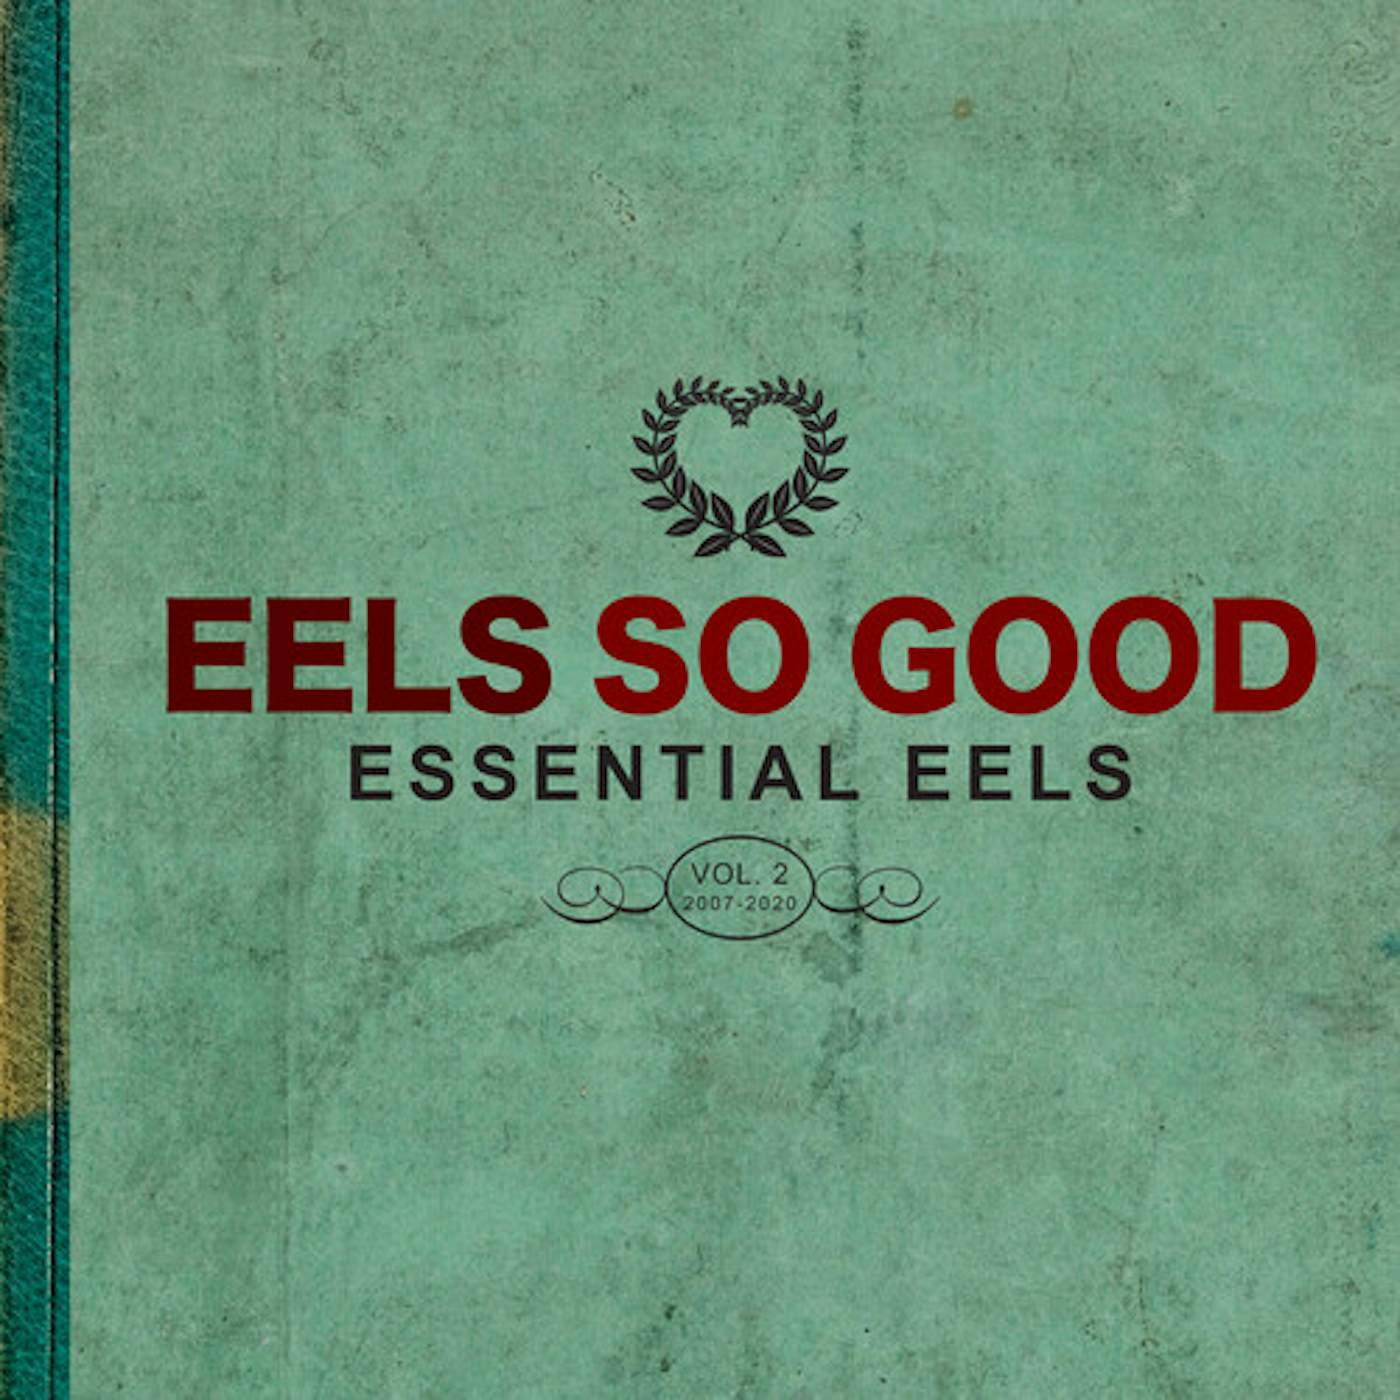 Eels So Good: Essential Eels Vol. 2 (2007-2020) [2LP] Vinyl Record